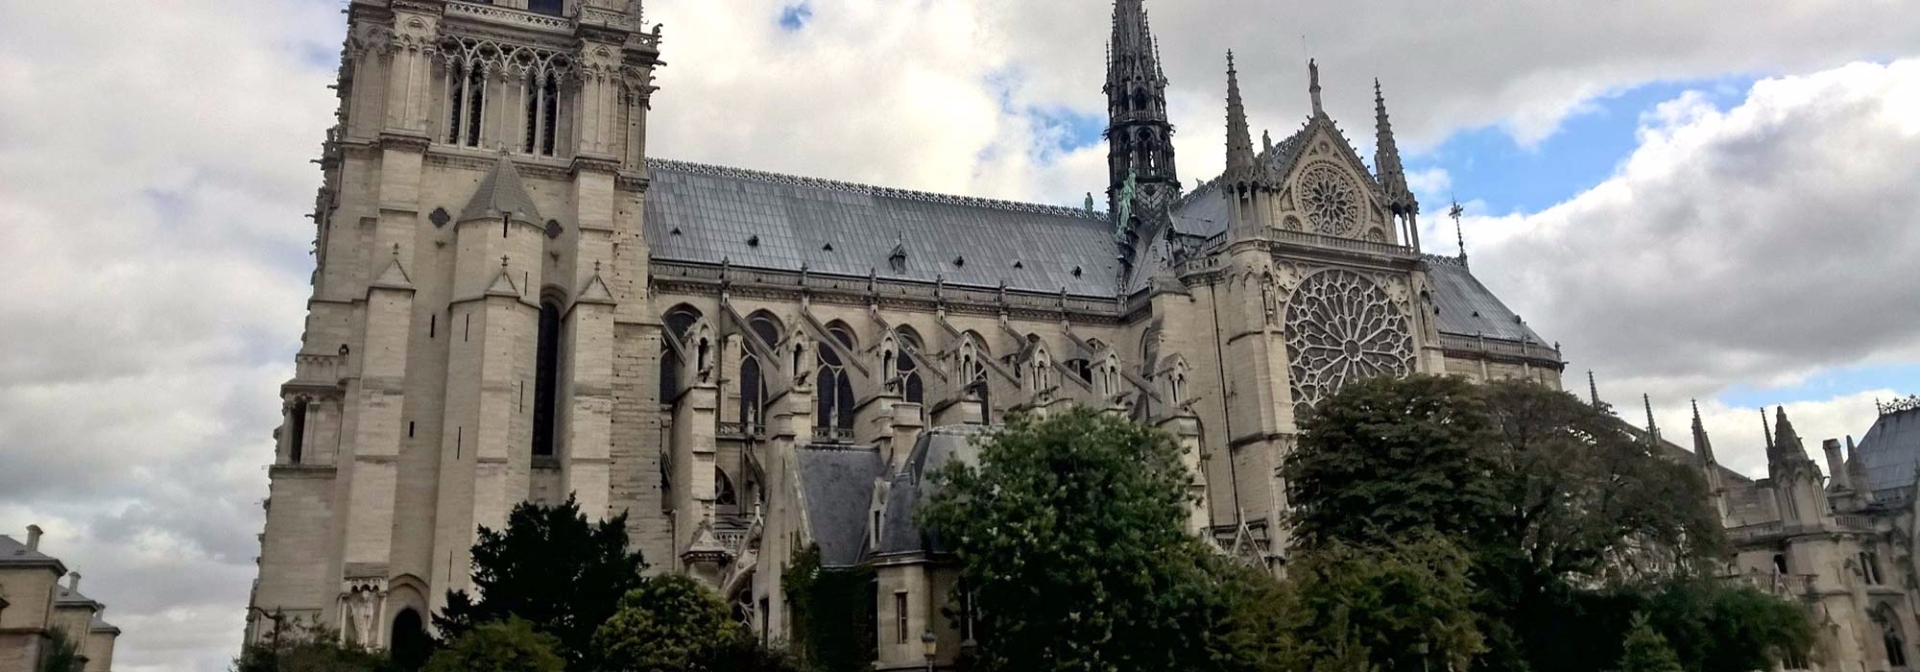 paris-cathedral.jpg